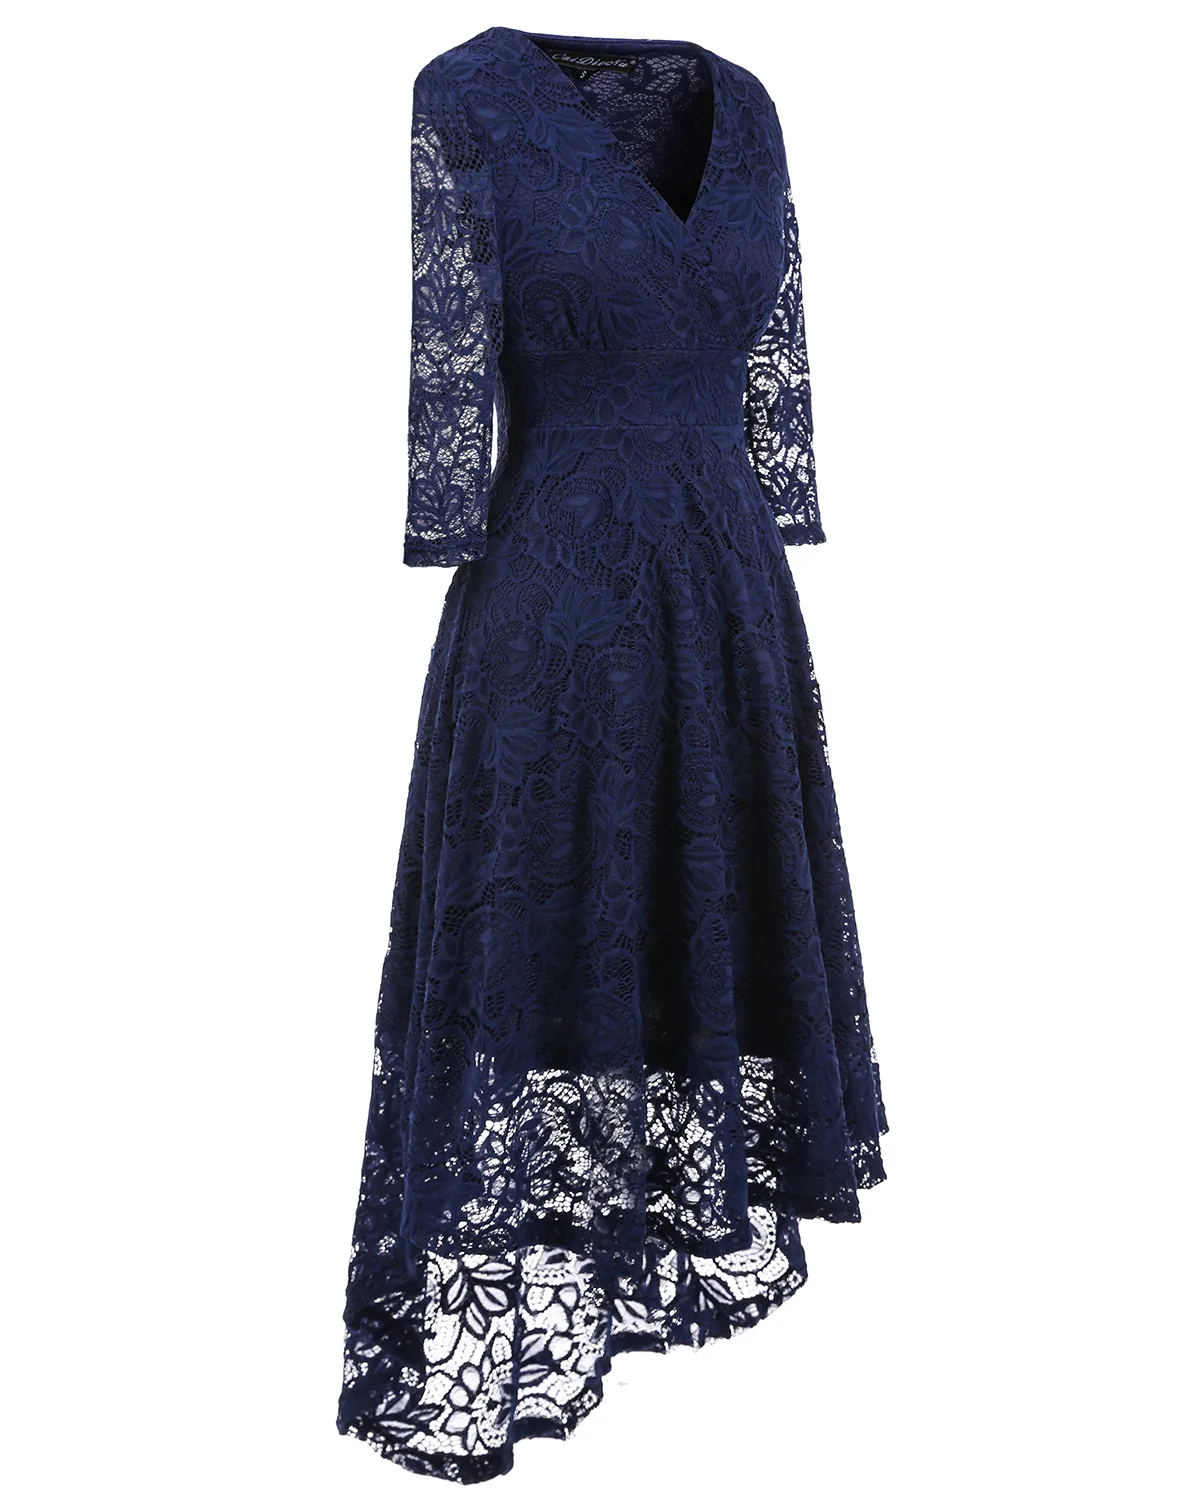 WEPBEL, женское летнее платье, Ретро стиль, 50-х, цветочное кружево, 3/4, длинный рукав, глубокий v-образный вырез, высокая талия, вечерние, коктейльное, миди, свободное платье